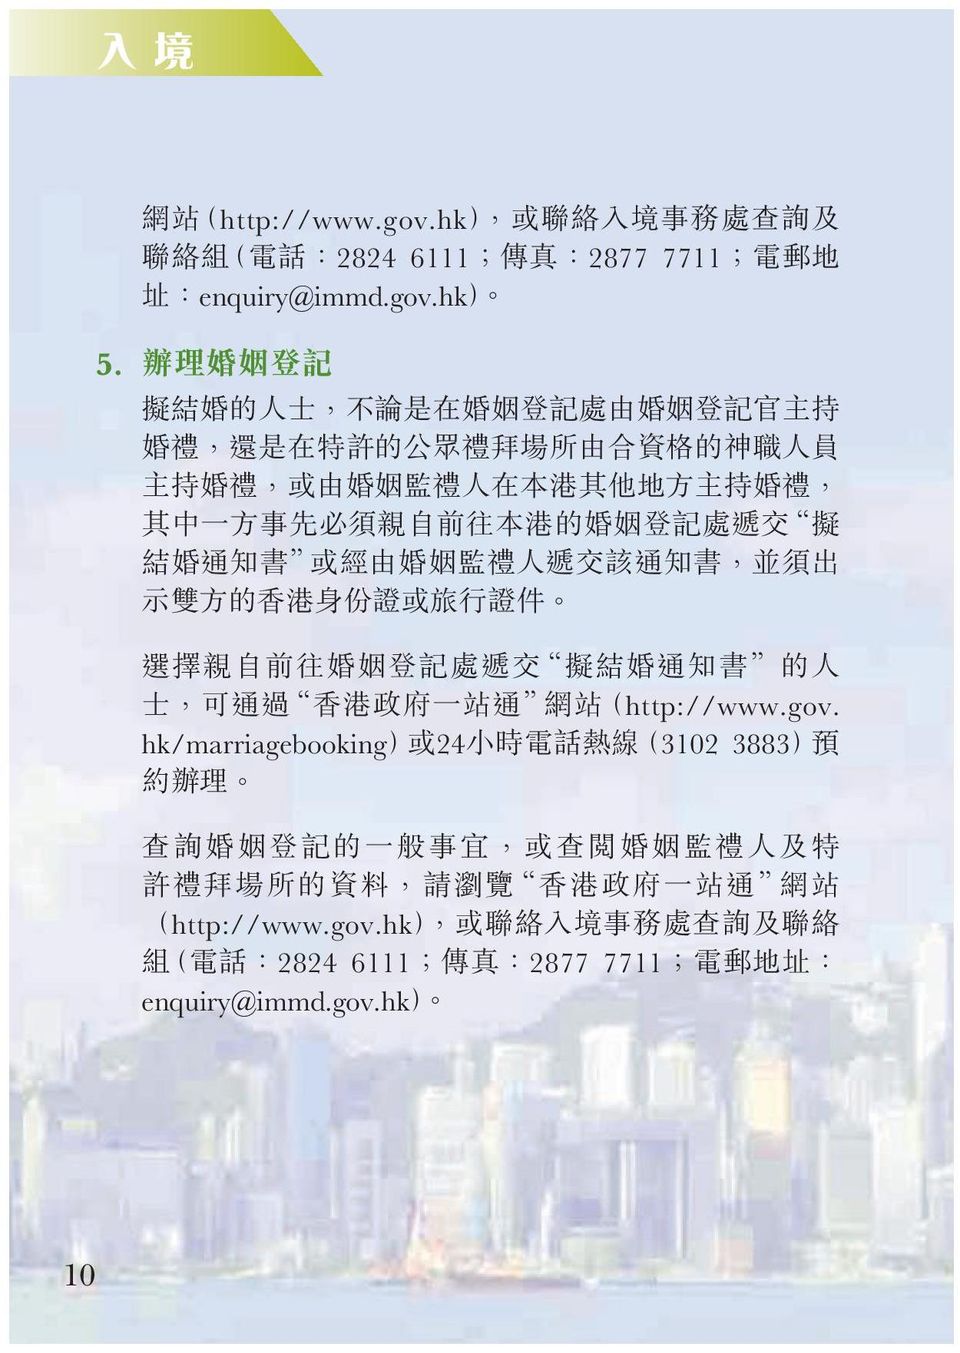 或經由婚姻監禮人遞交該通知書 並須出 示雙方的香港身份證或旅行證件 選擇親自前往婚姻登記處遞交 擬結婚通知書 的人 士 可通過 香港政府一站通 網站 http://www.gov.